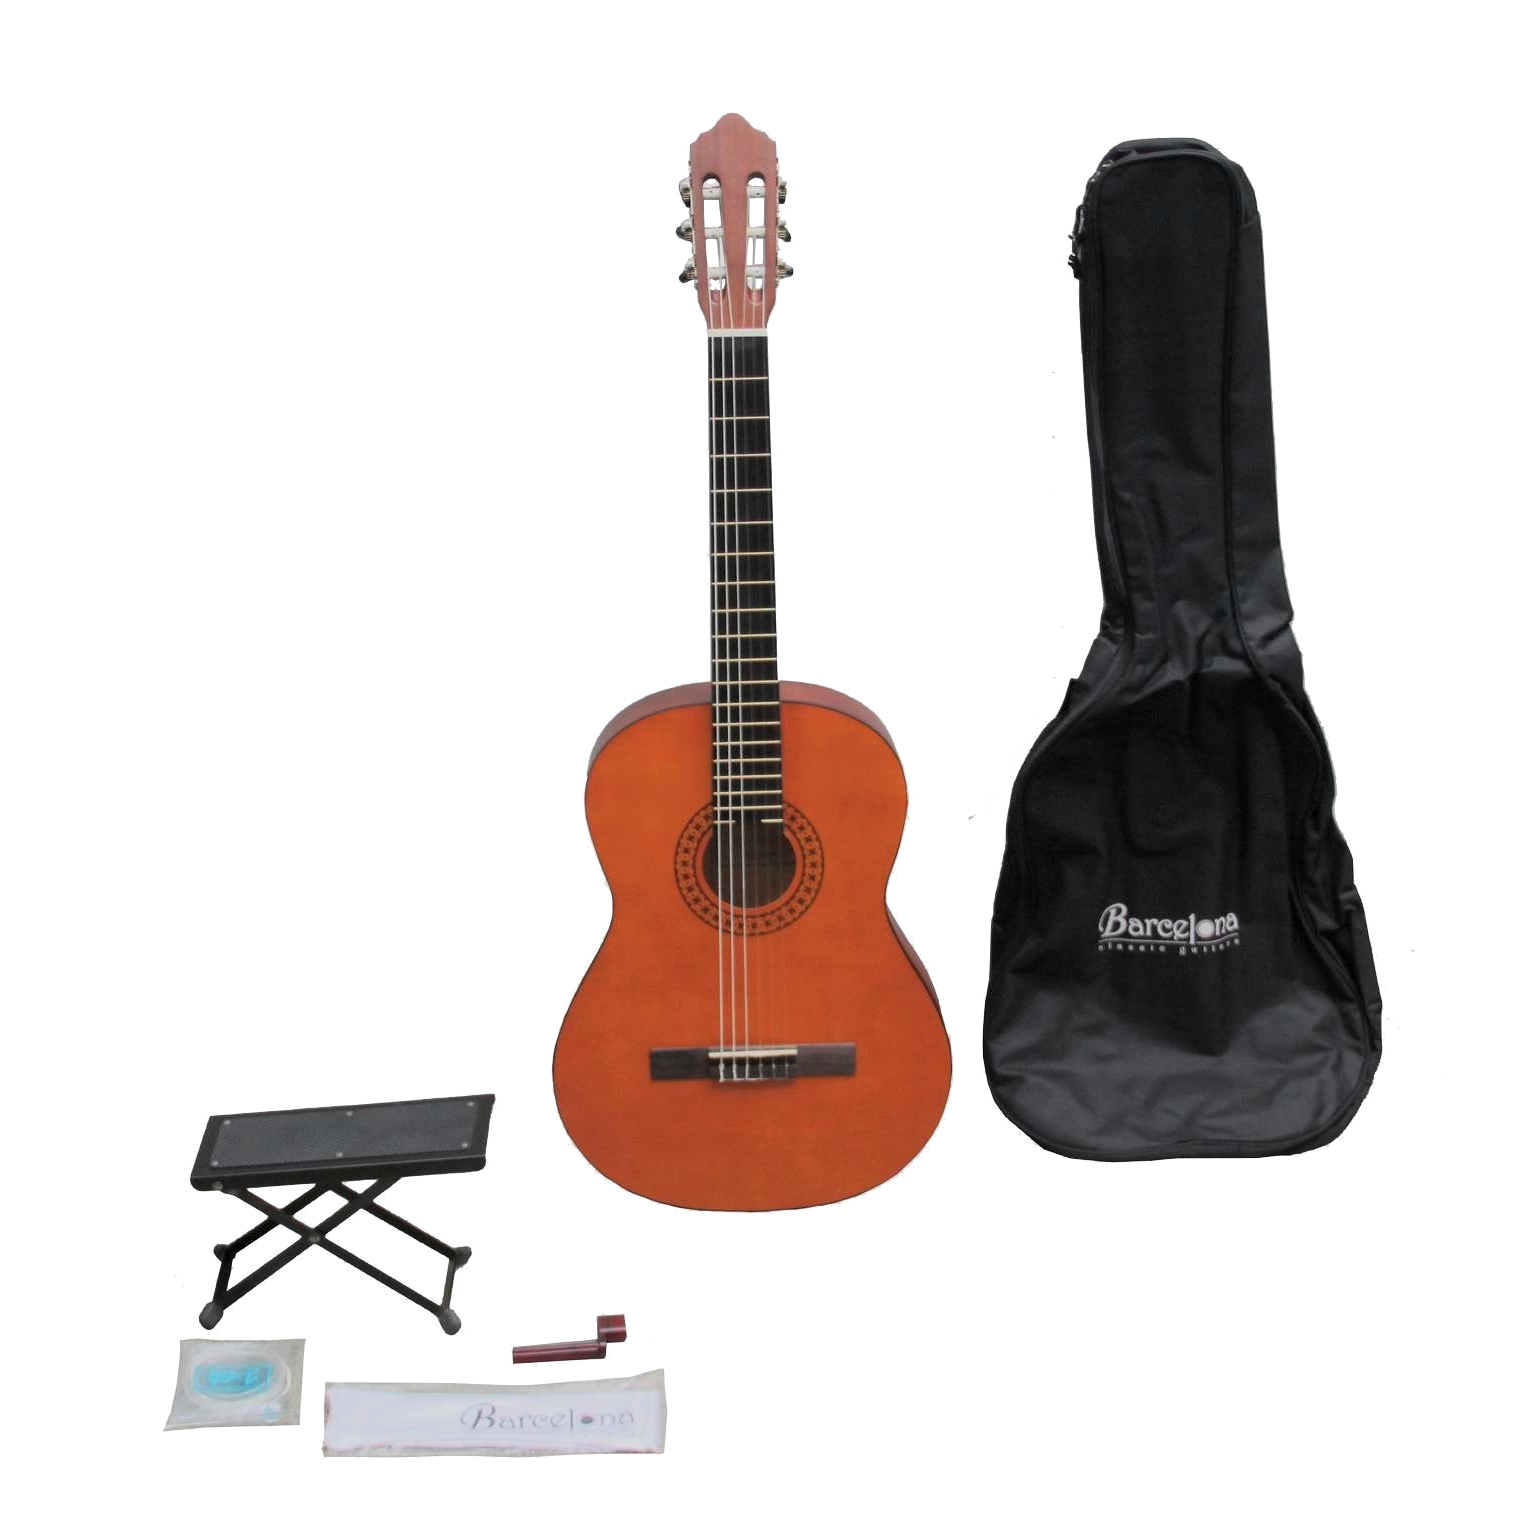 Barcelona CG11K/NA - Набор:Классическая гитара, чехол, подставка, струны